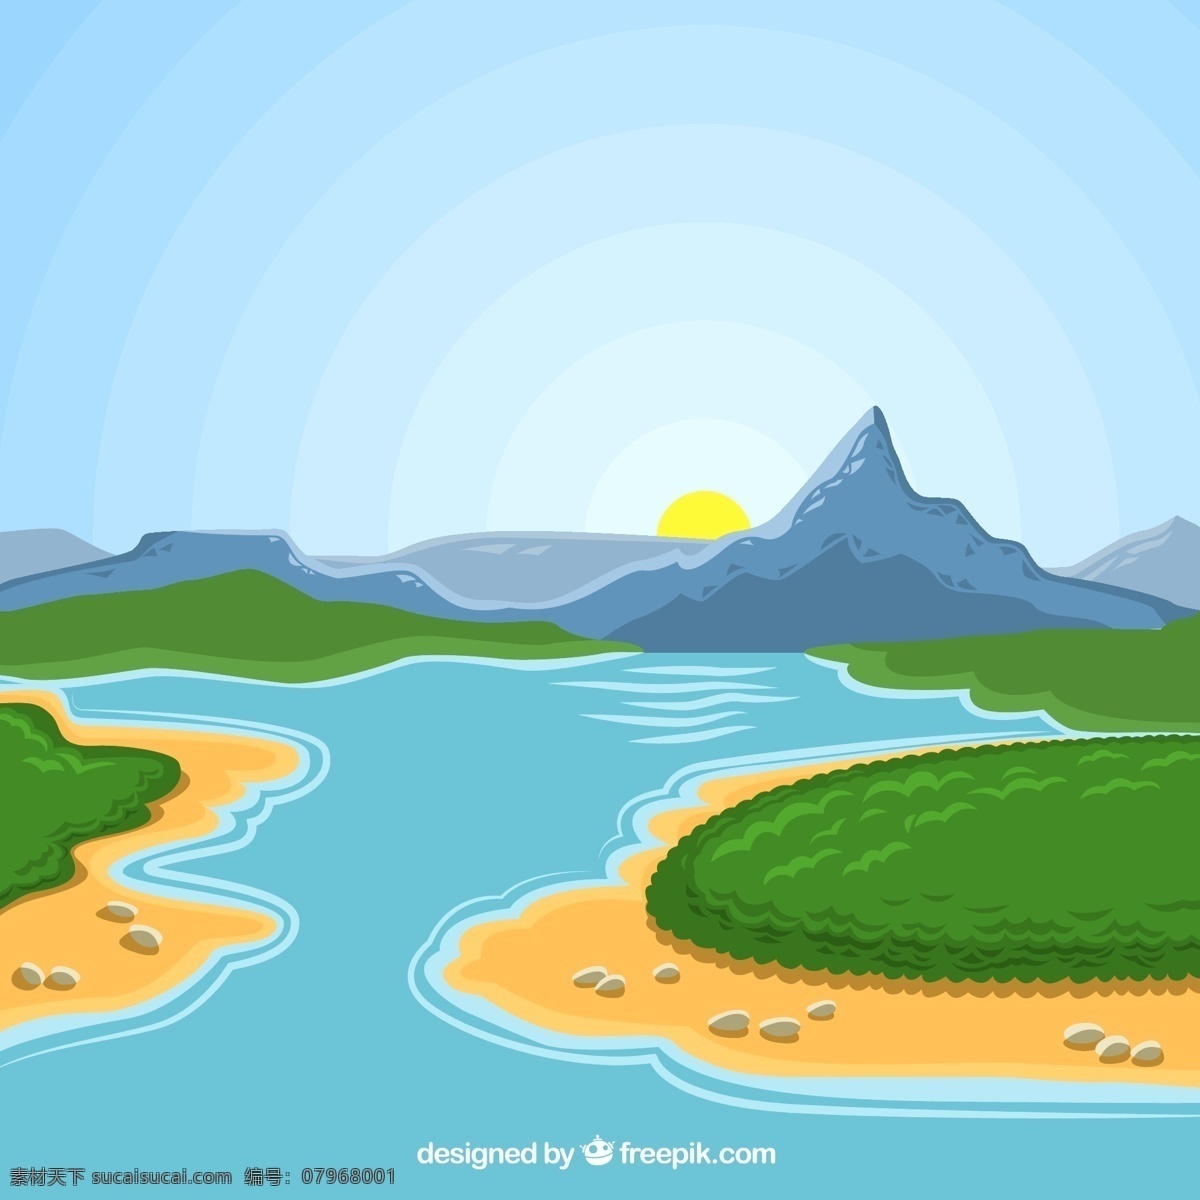 卡通 河谷 风景 矢量 壮观 彩色 夕阳 青色 天蓝色